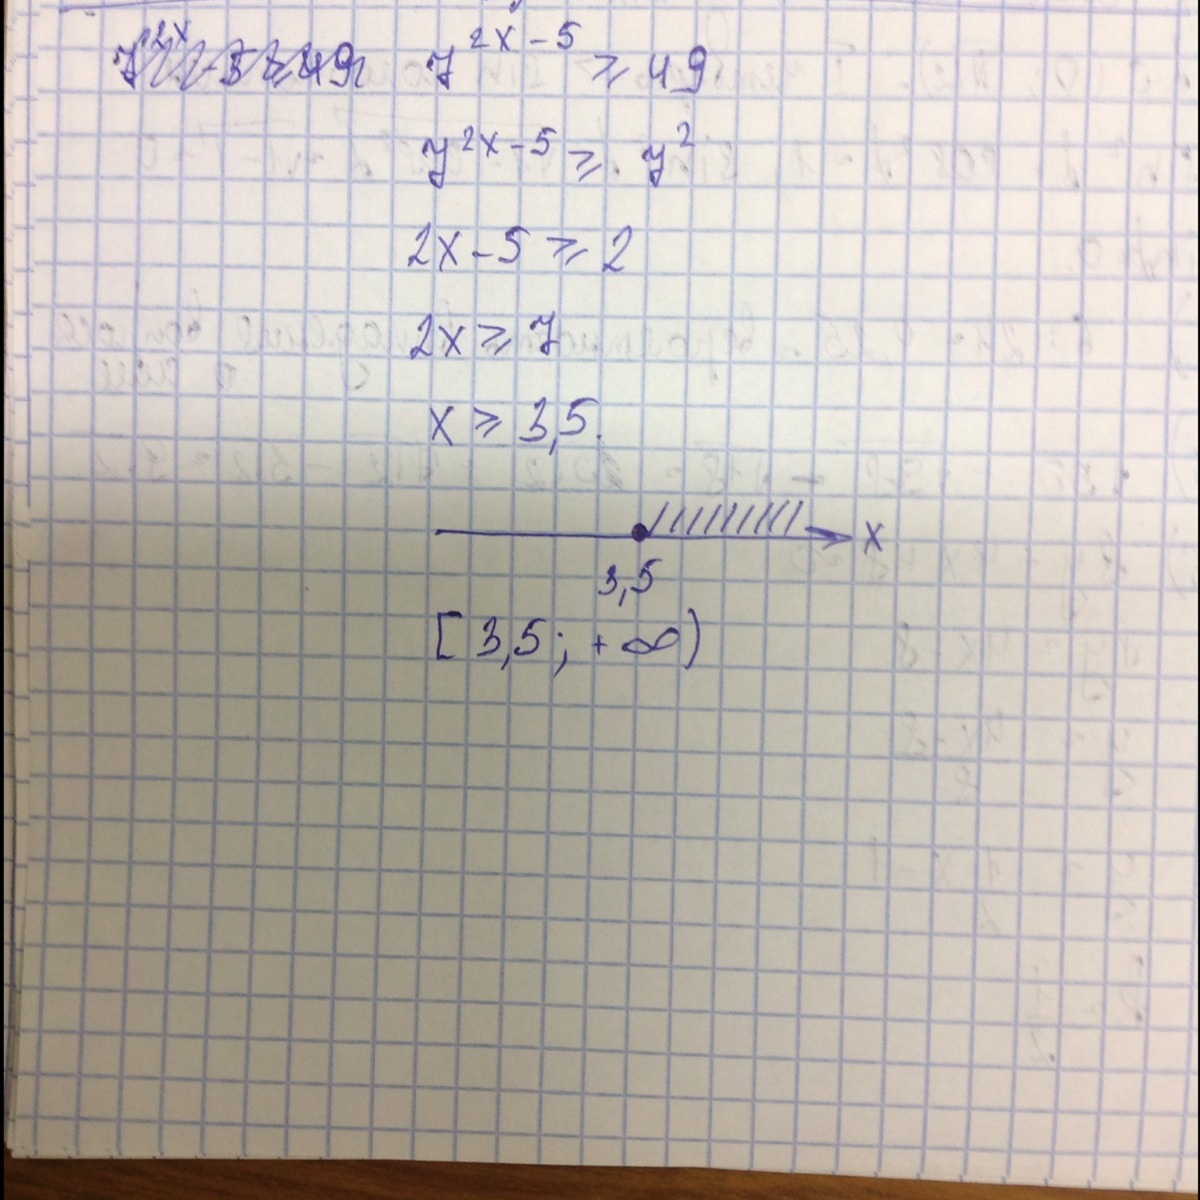 32 x 7 0 5. Решение неравенства x2 49. Х2 > 49. 2 В степени х равно 7. Х²+0,49=0.